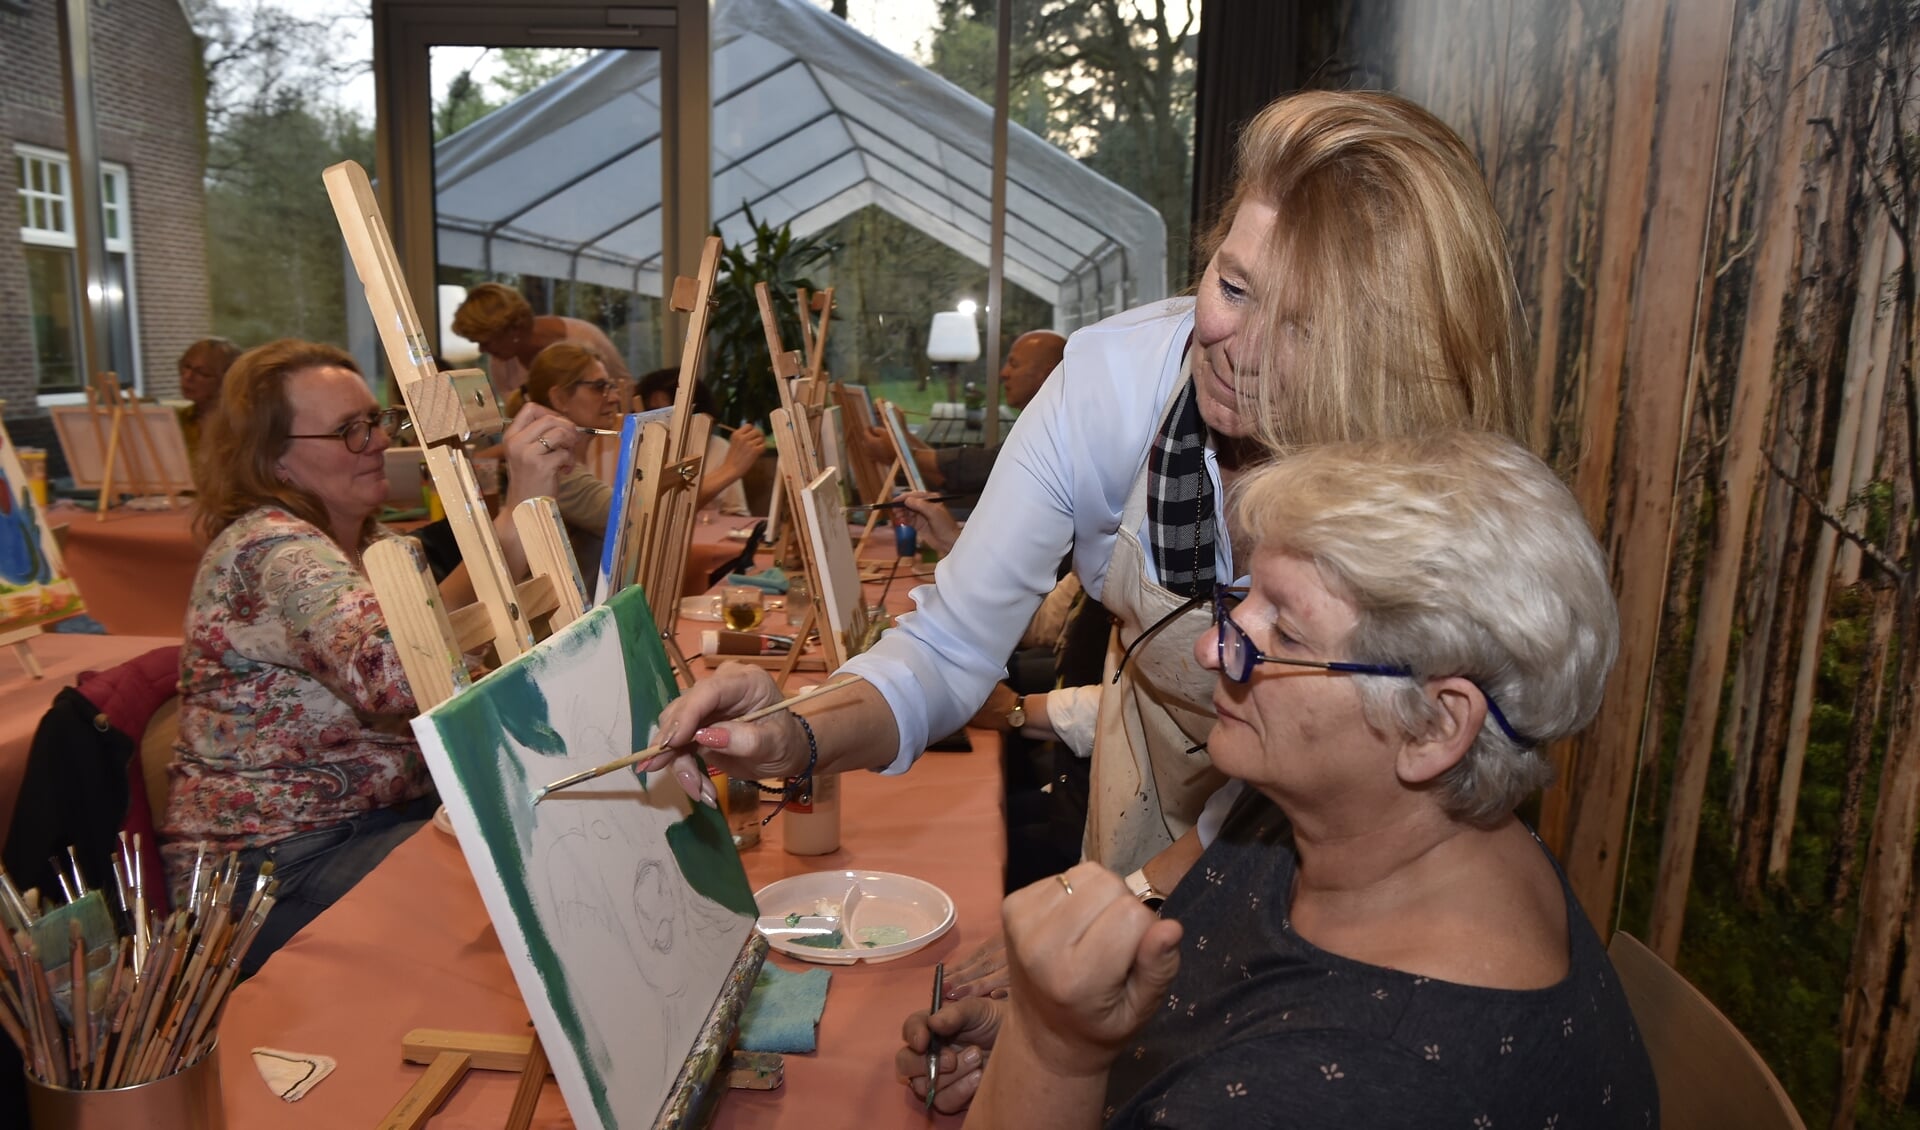 Kunstenares Karina Wijnen geeft weer een workshop schilderen.